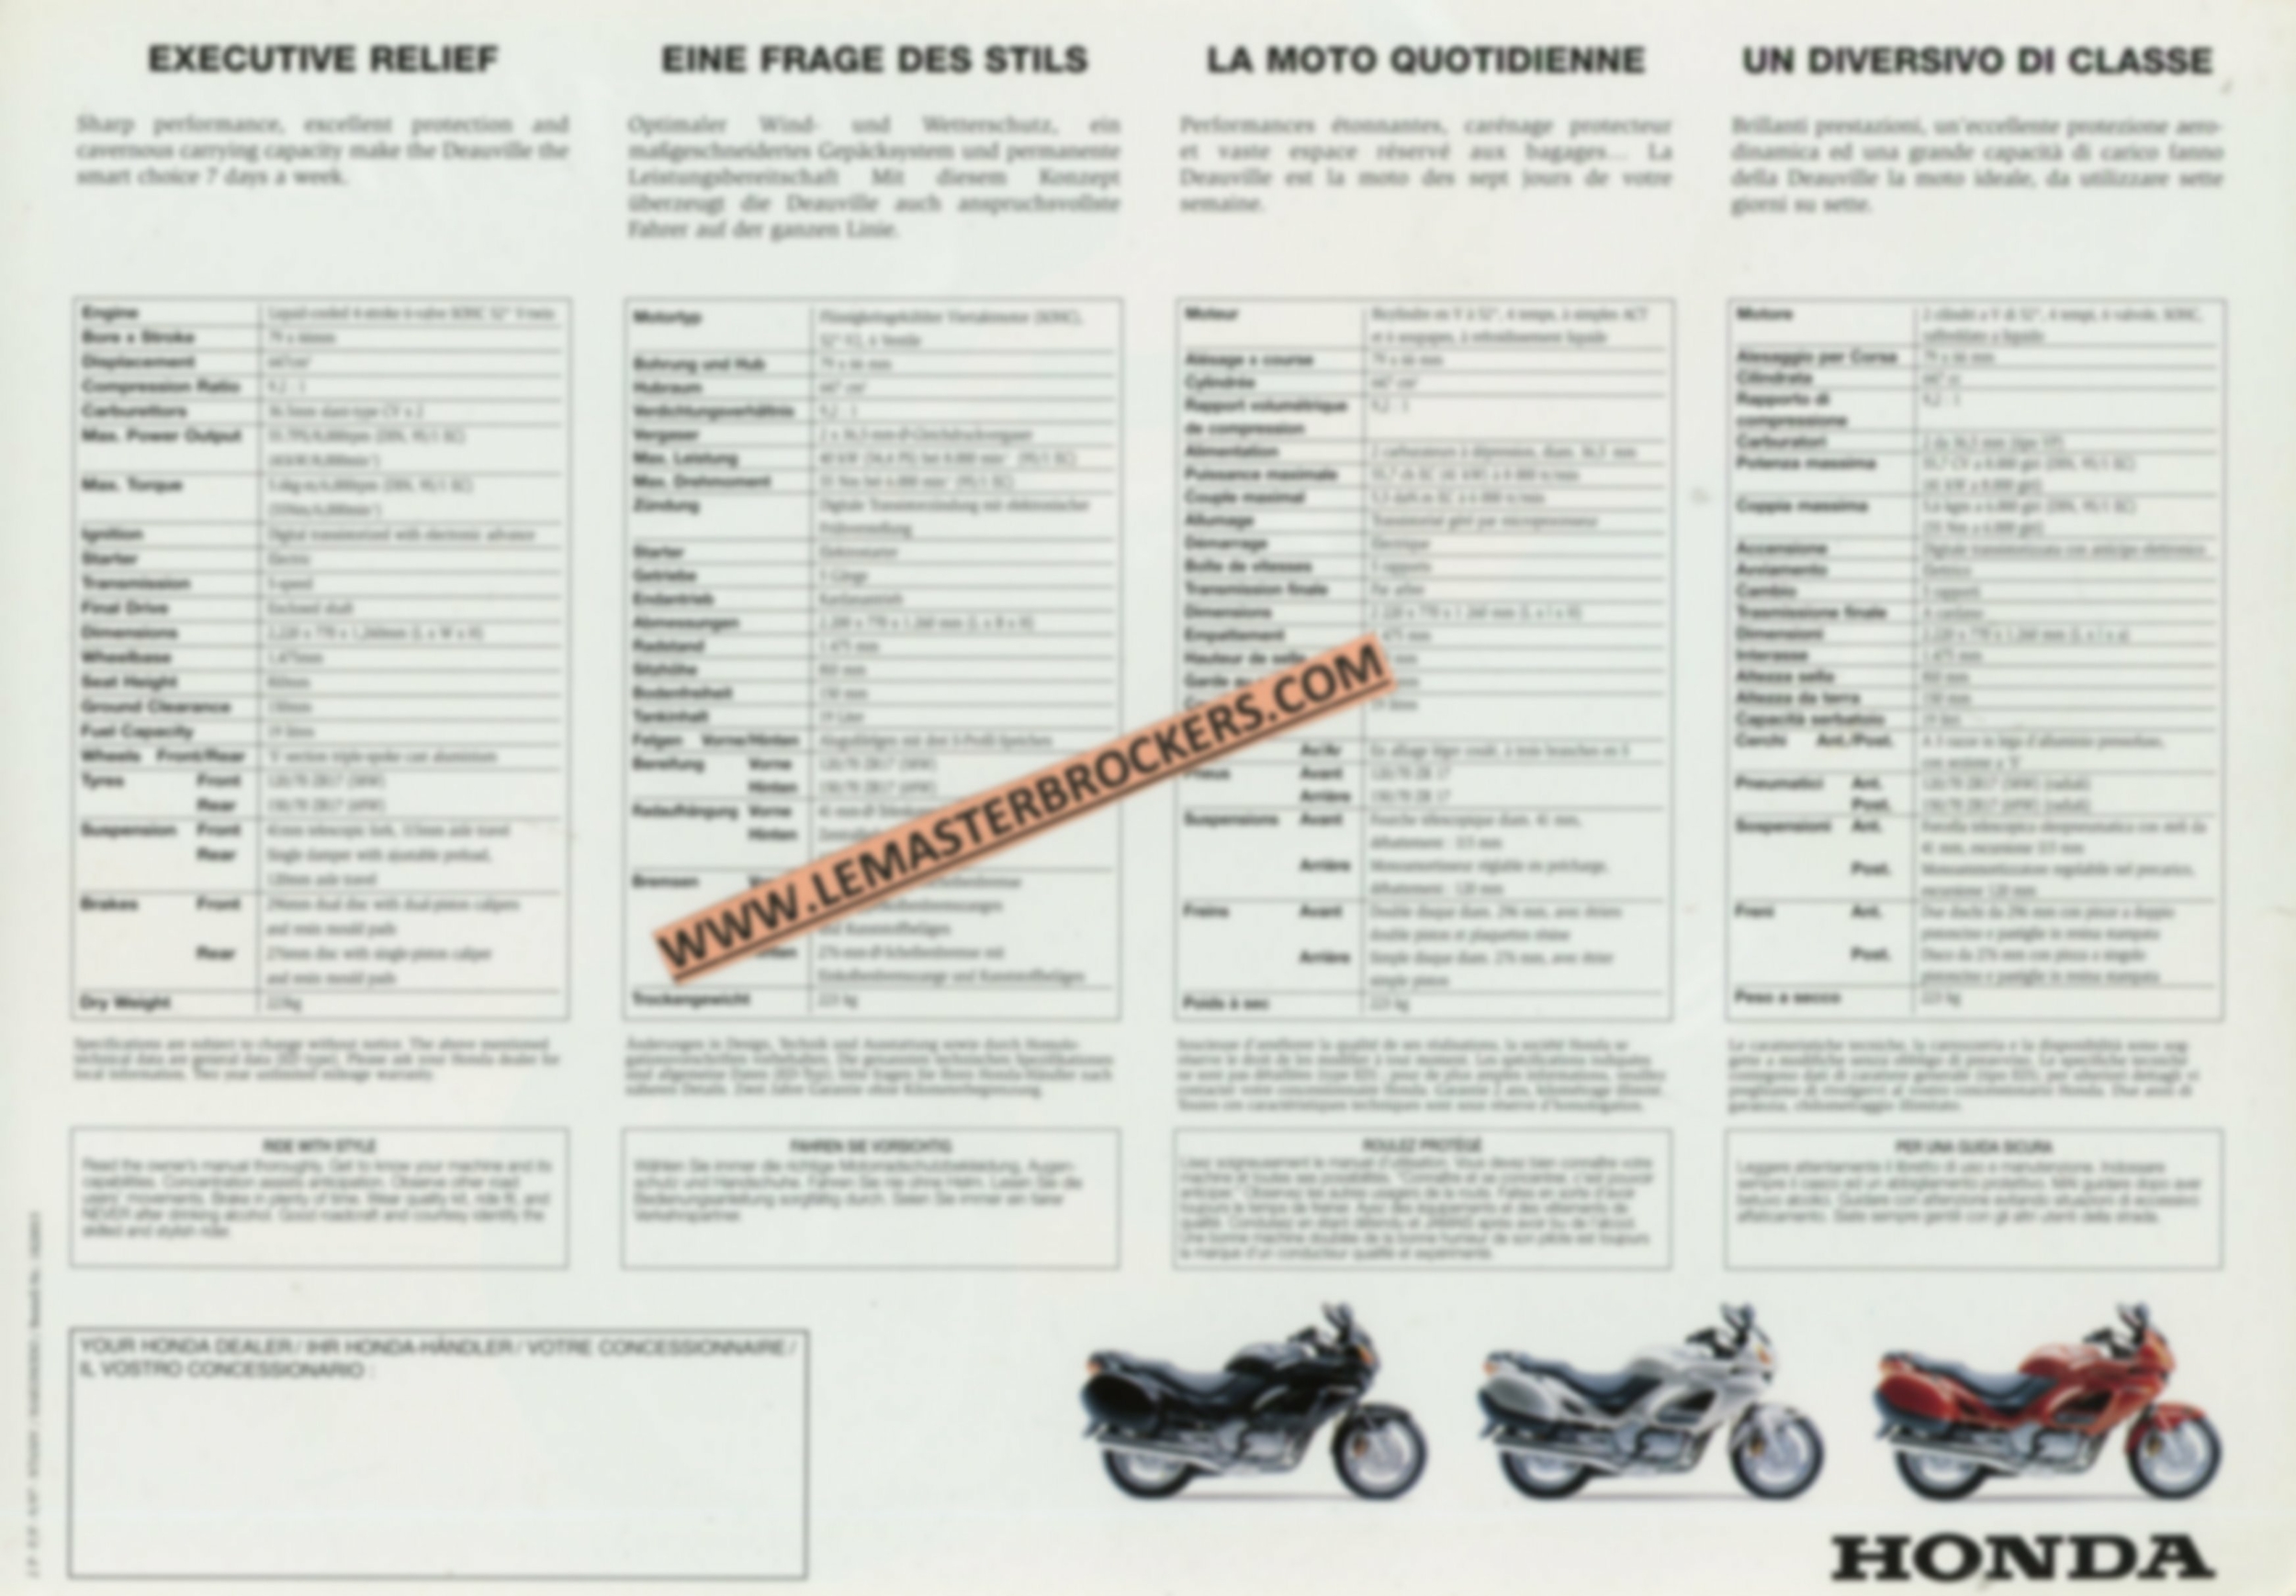 brochure-moto-honda-deauville-nt650-prospekt-LEMASTERBROCKERS-1997-NT650V